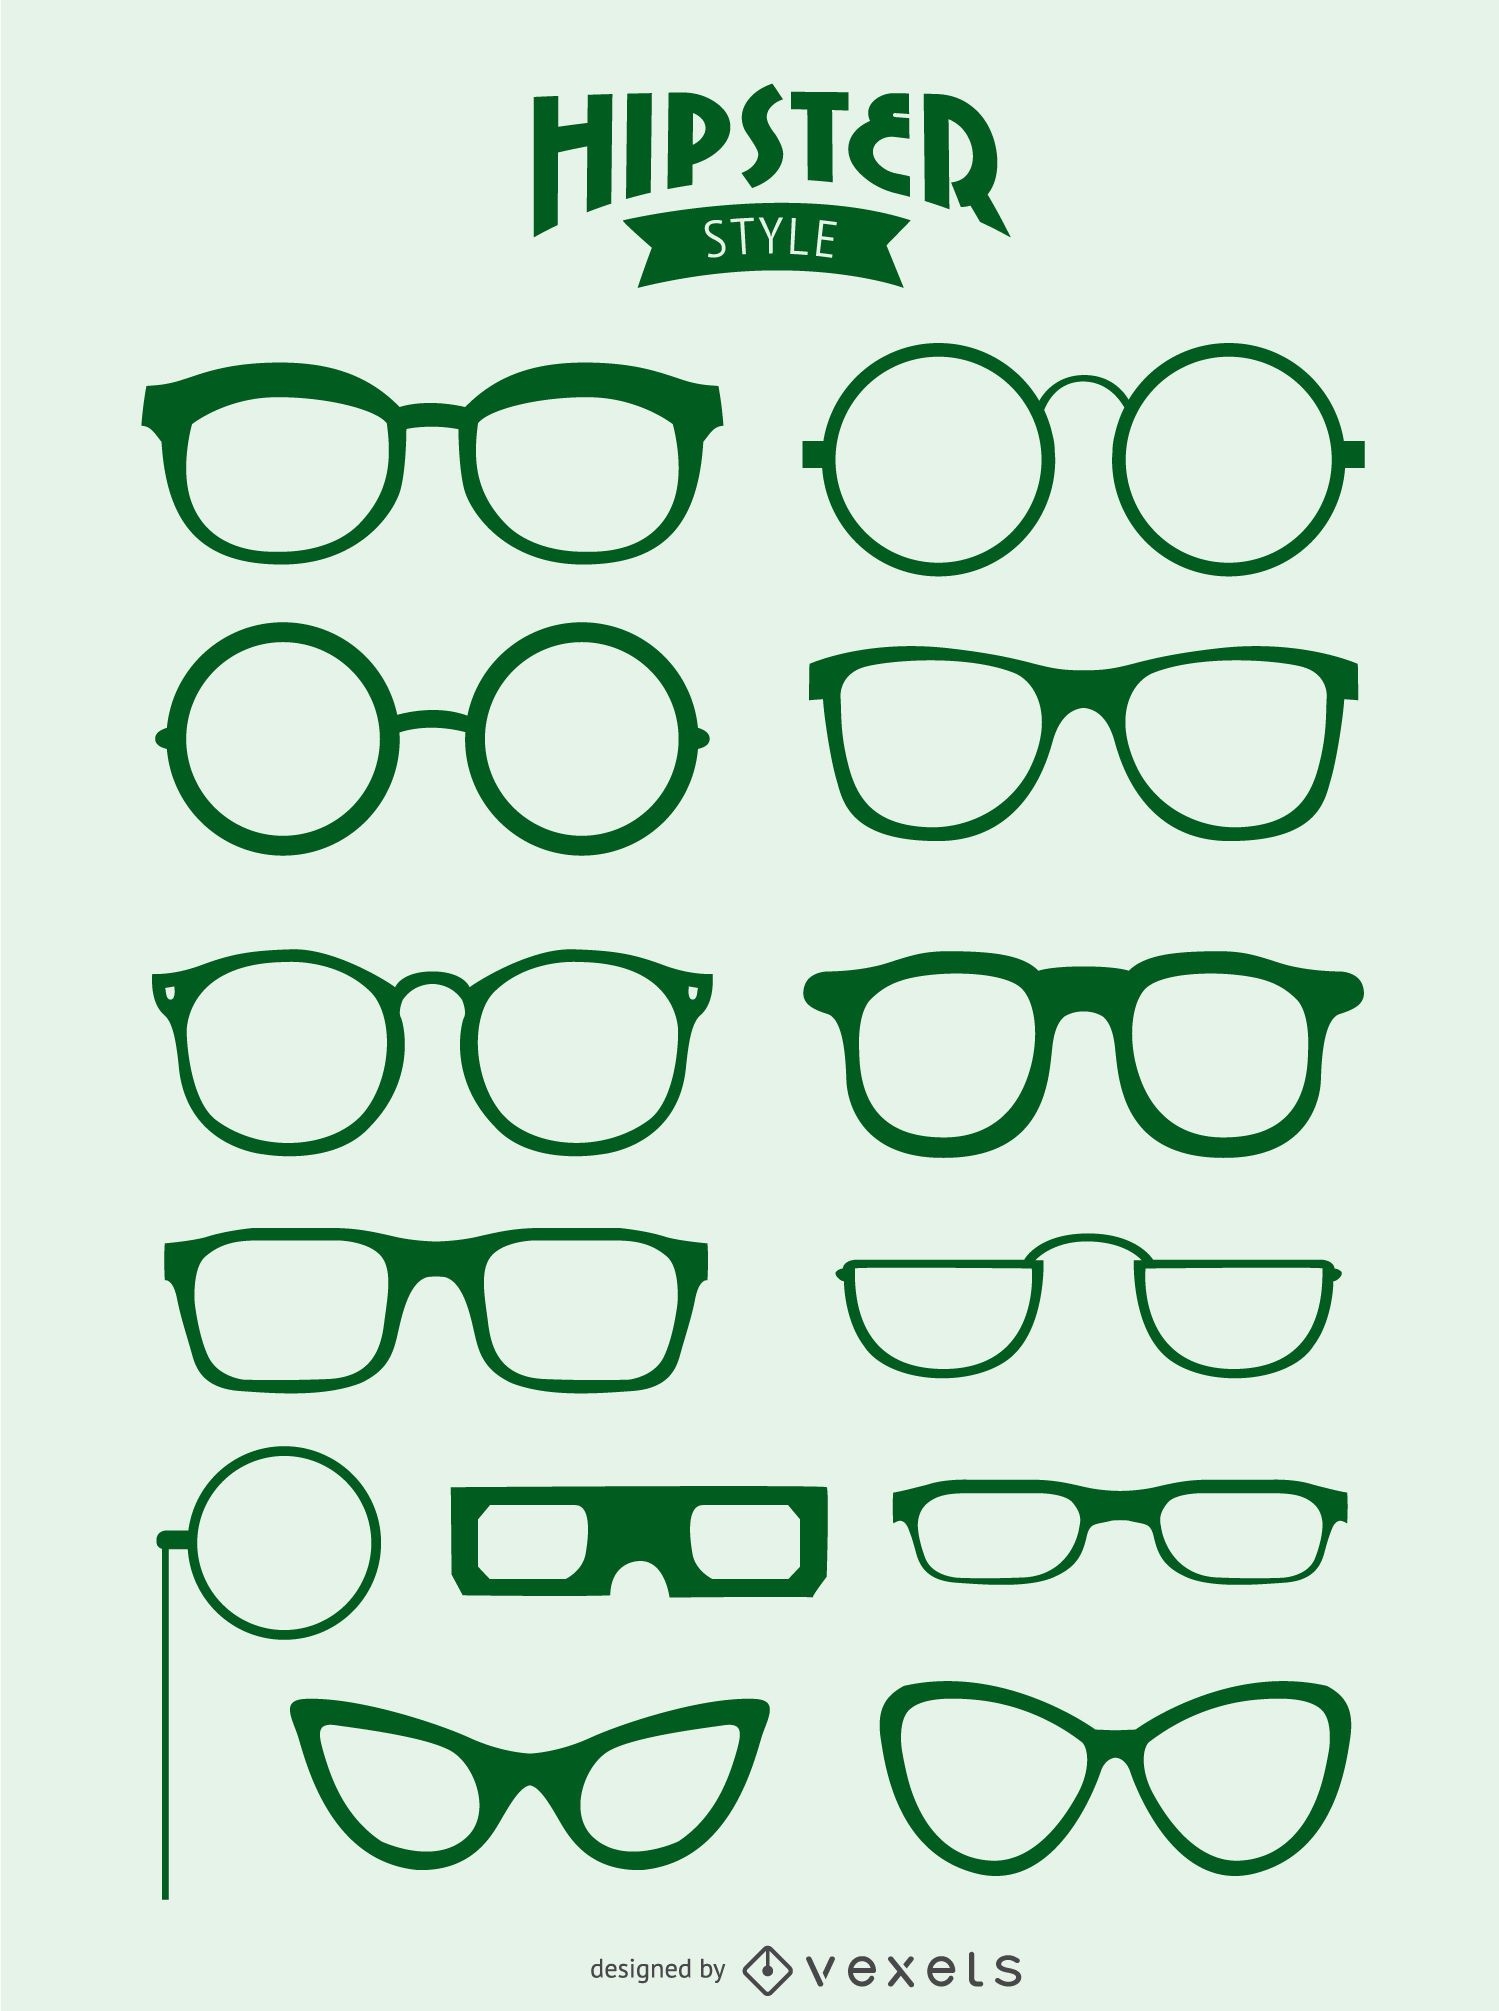 13 Hipster glasses 